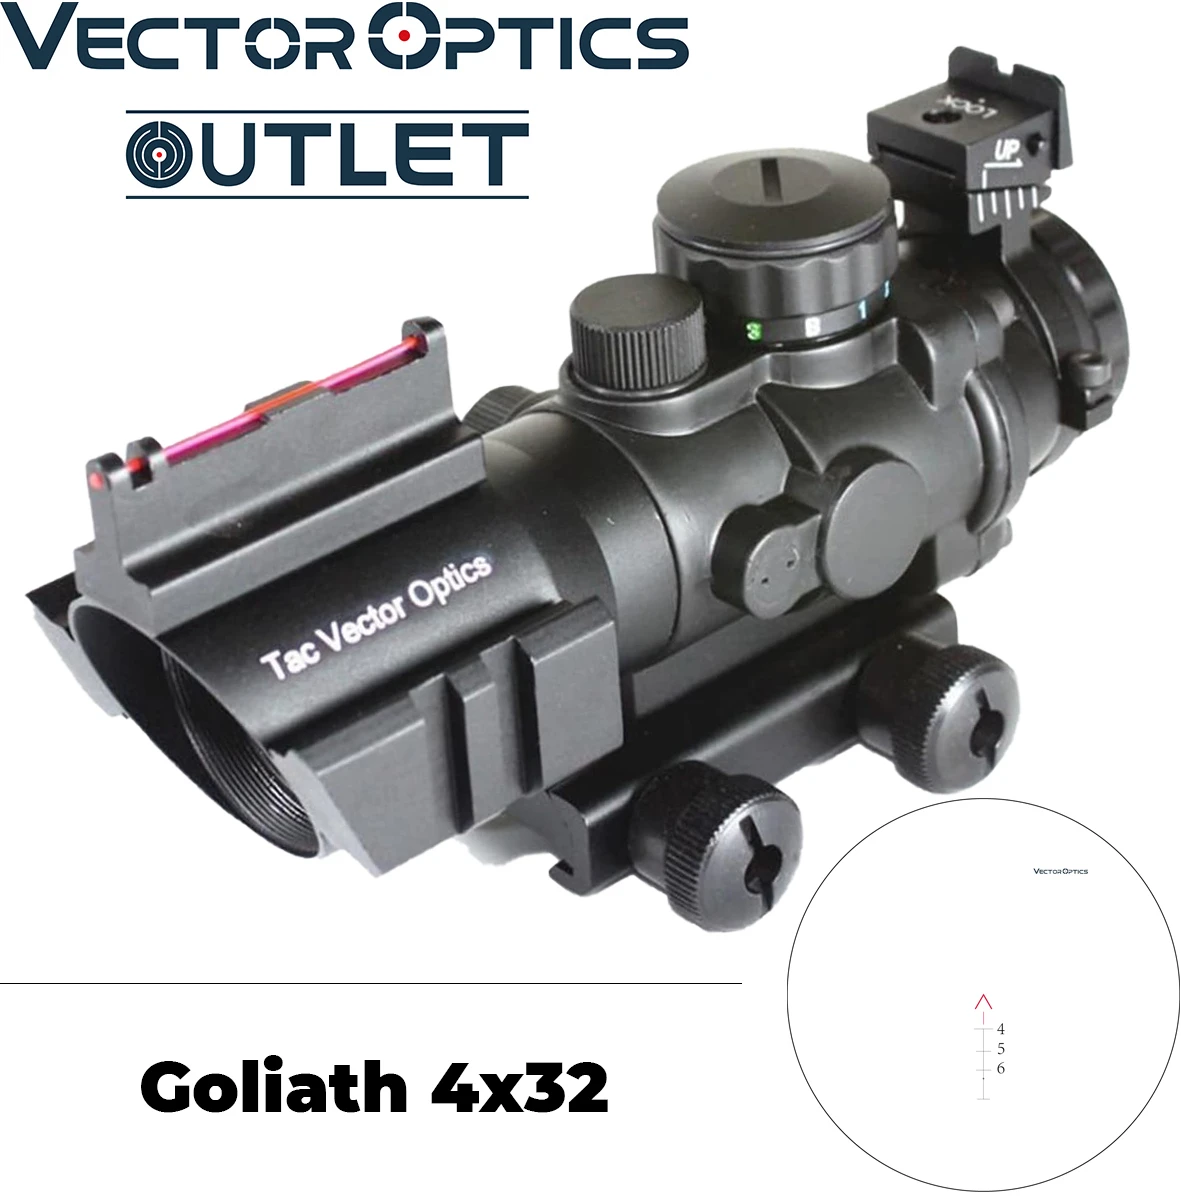 Векторная оптика Goliath 4x32 оптический прицел Призма оптический прицел с подсветкой шеврон BDC Сетка с Rean прицел. 223 5,56 AR15